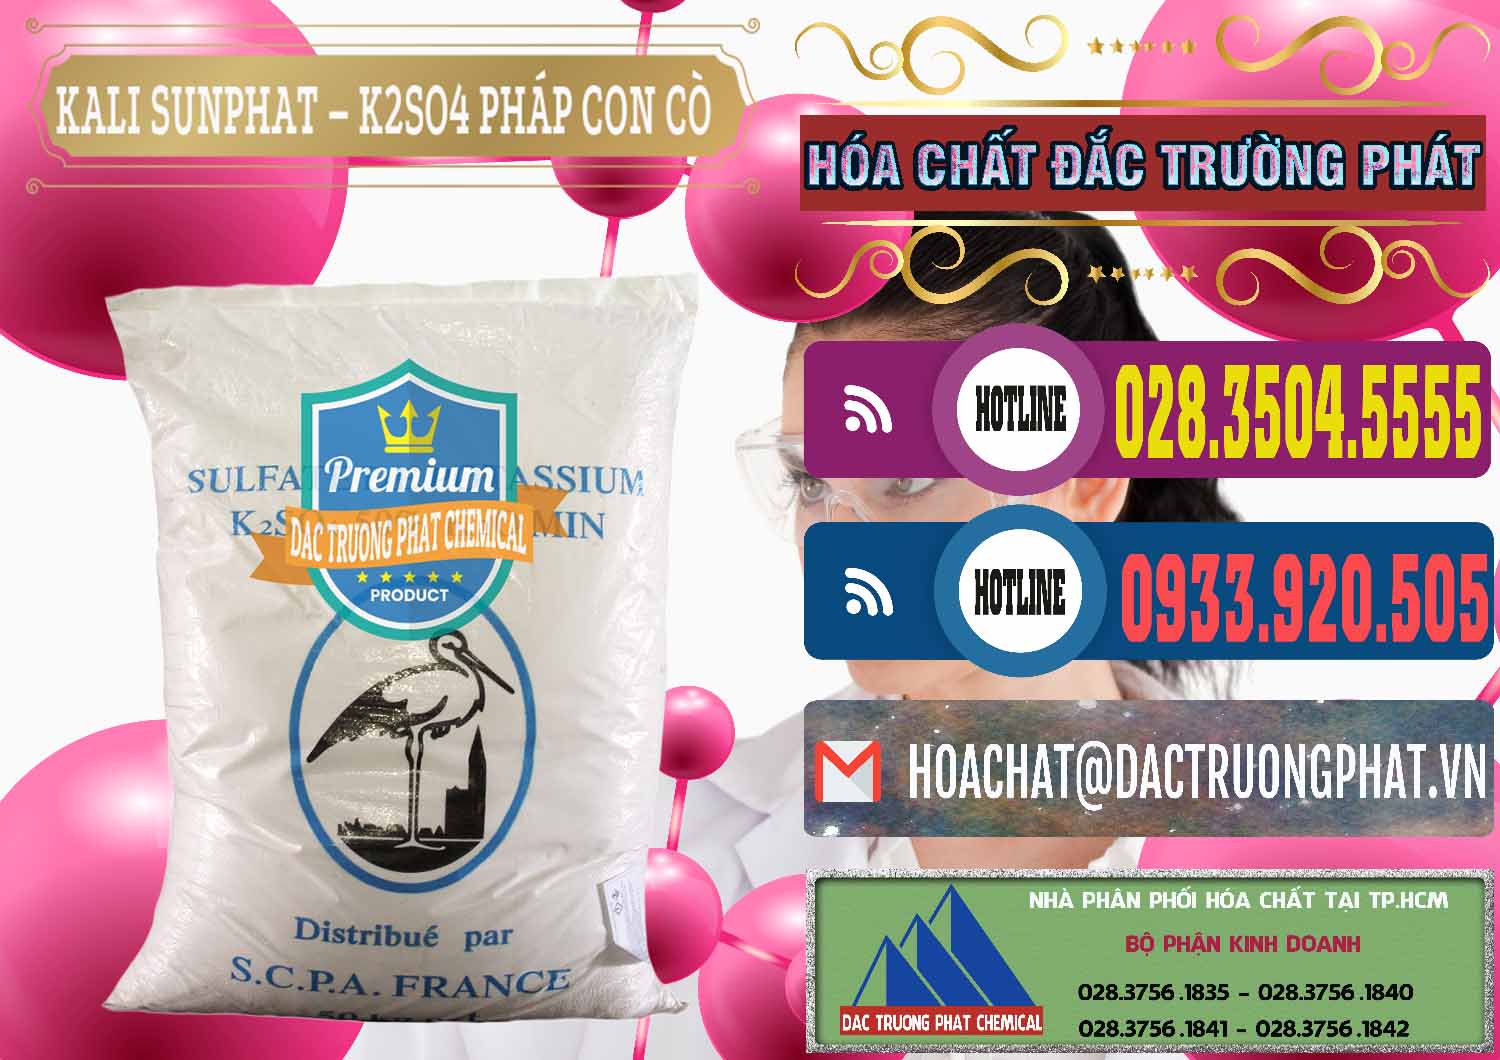 Đơn vị nhập khẩu & bán Kali Sunphat – K2SO4 Con Cò Pháp France - 0083 - Nơi chuyên nhập khẩu ( cung cấp ) hóa chất tại TP.HCM - muabanhoachat.com.vn